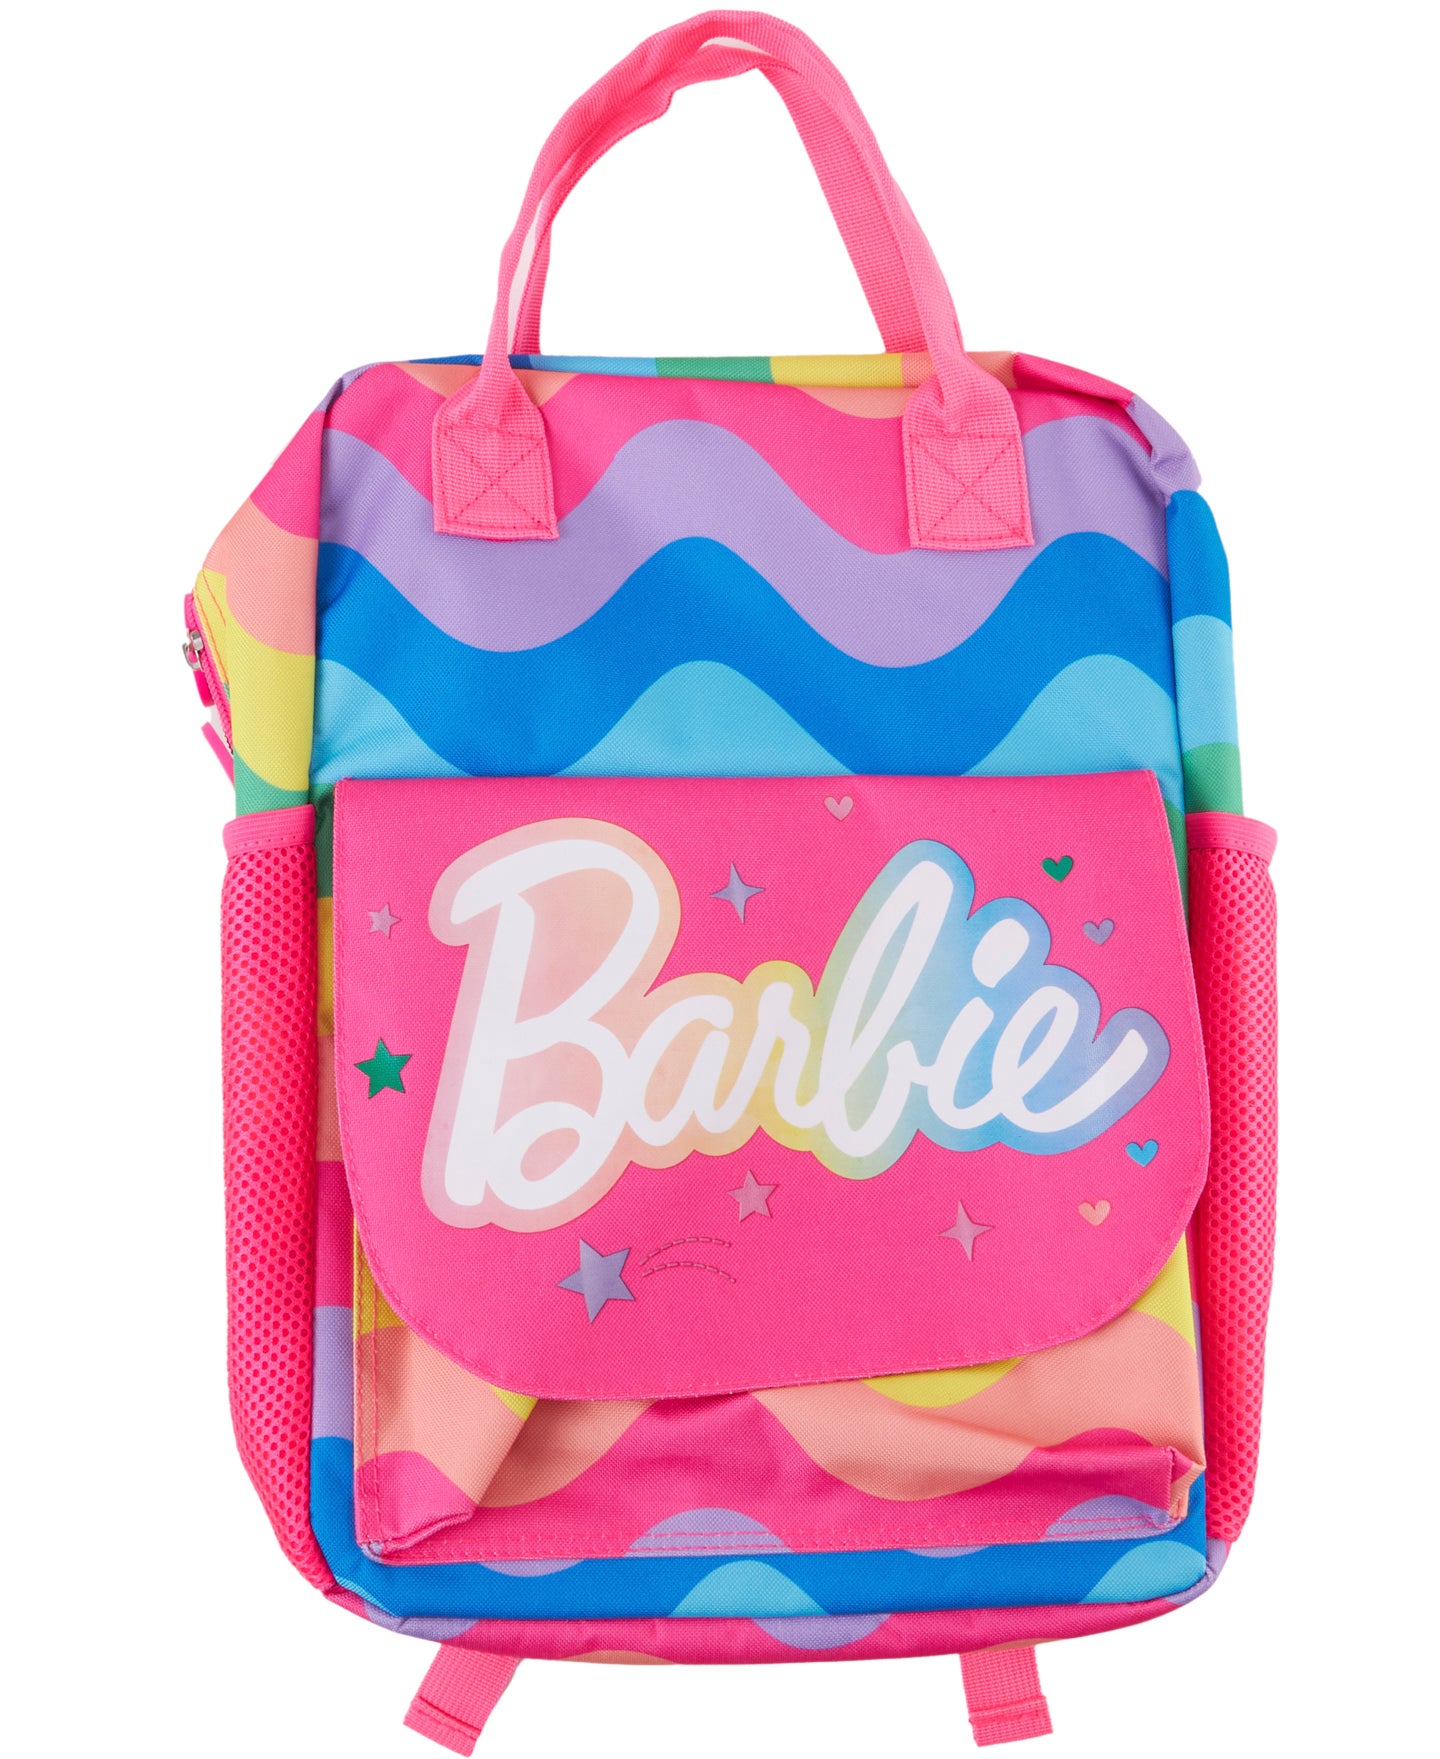 Barbie Backpack in Multi Rainbow